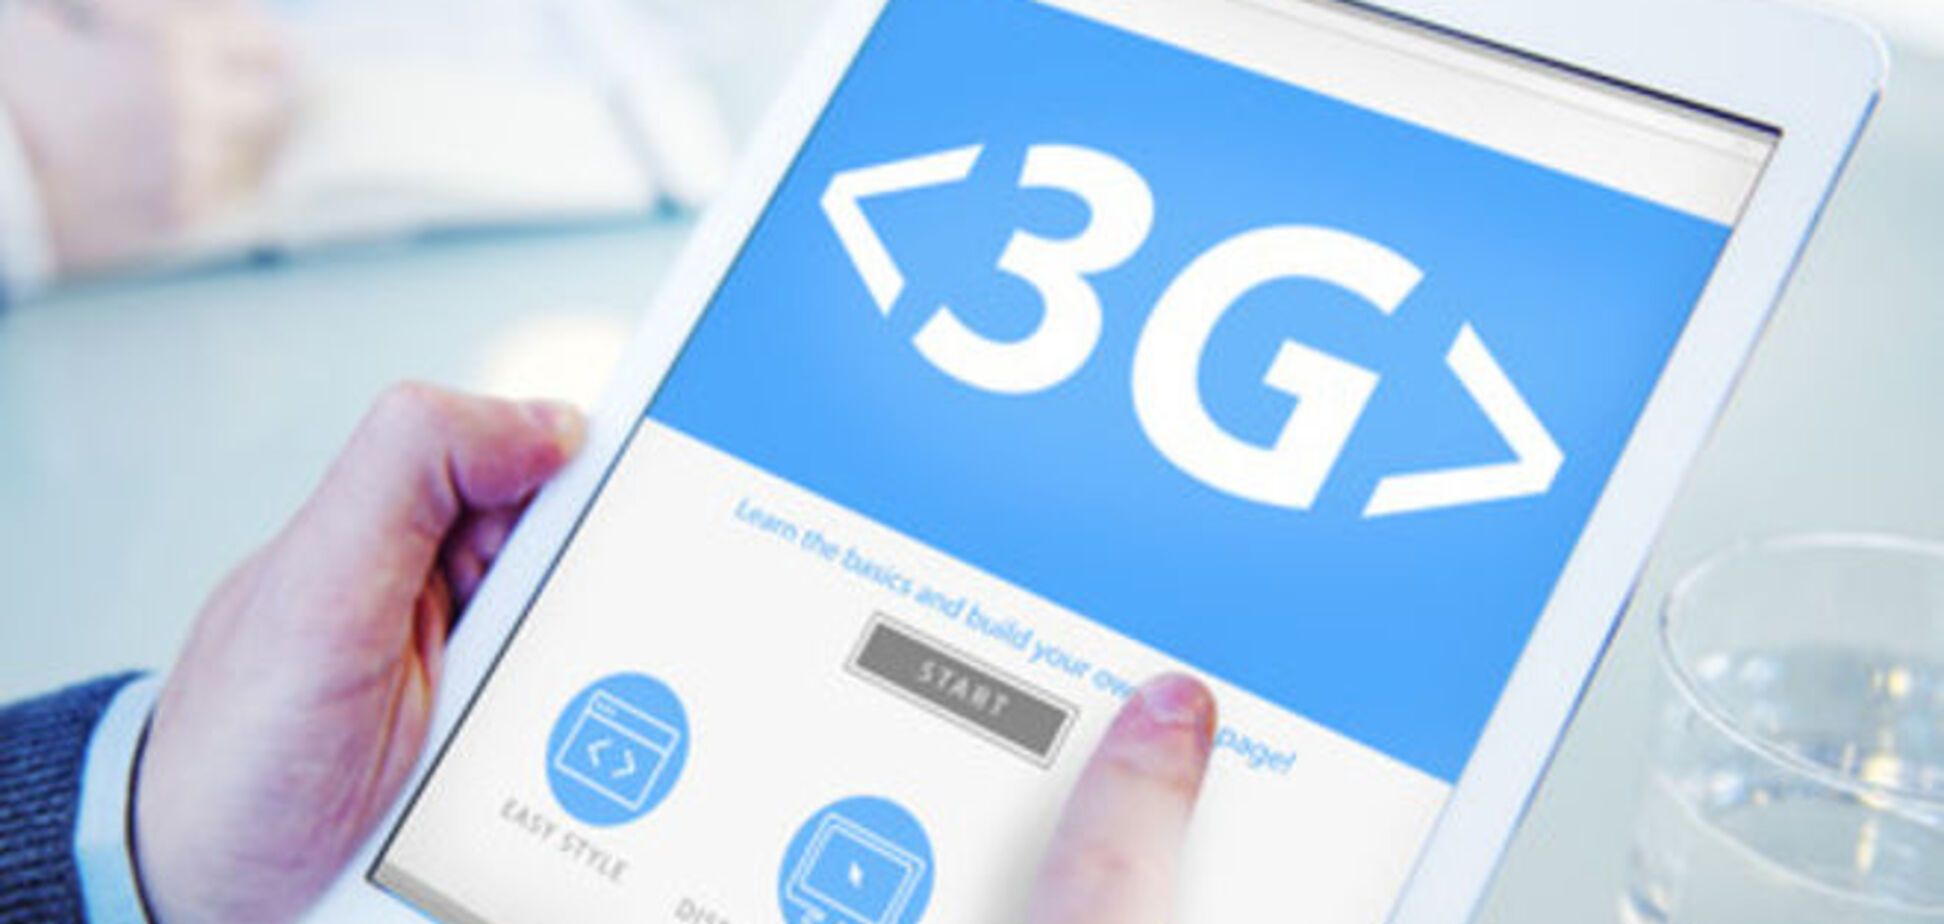 Обнародованы тарифы на 3G от всех операторов: выбираем самый выгодный